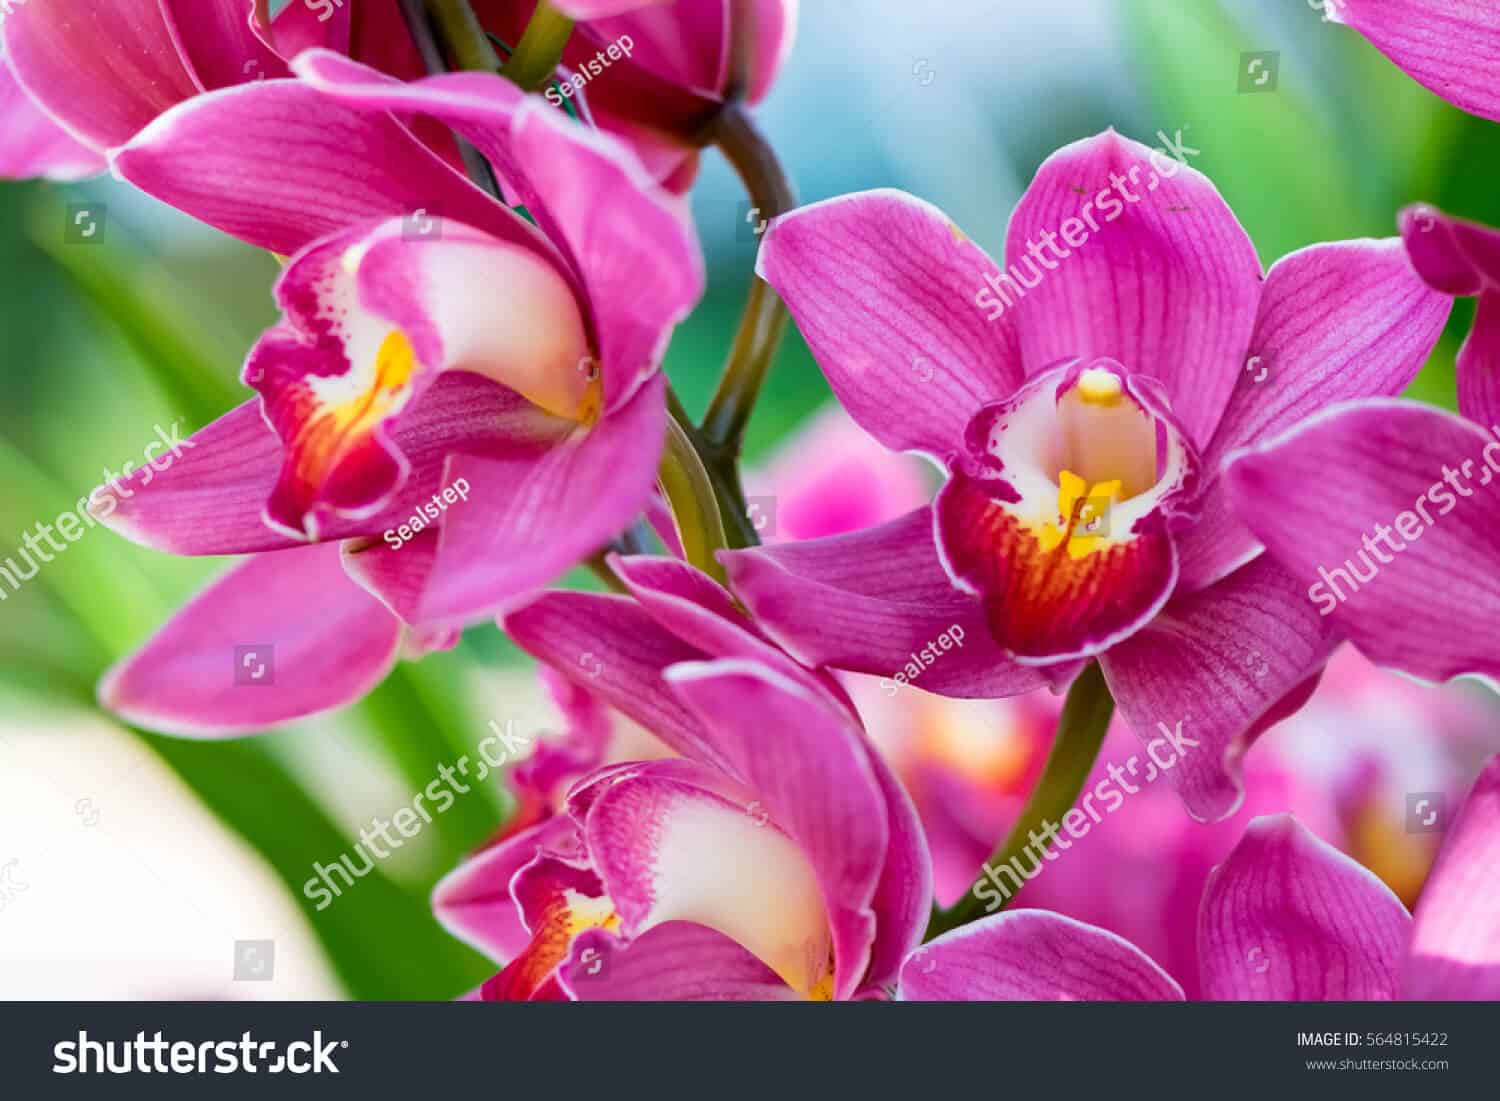 770 ngàn hình ảnh hoa lan chất lượng cao dành cho in ấn trên Shutterstock